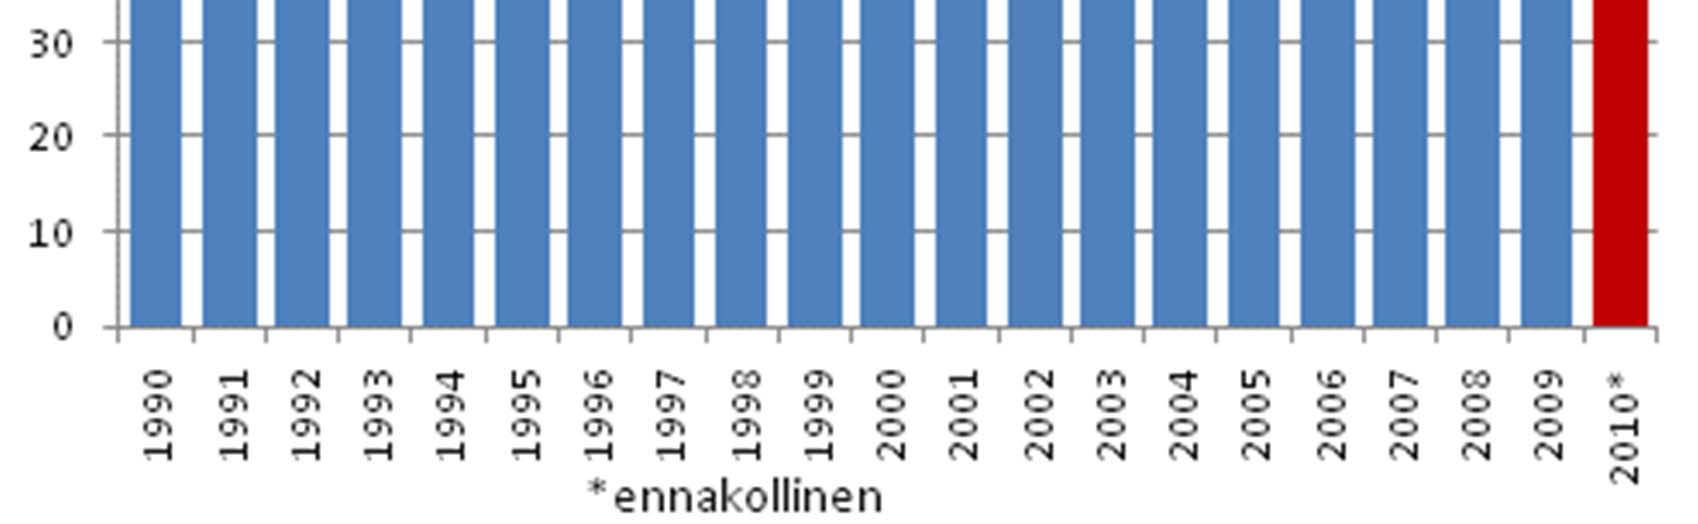 (3) Suomen CO2 päästöt energian tuotannosta ja